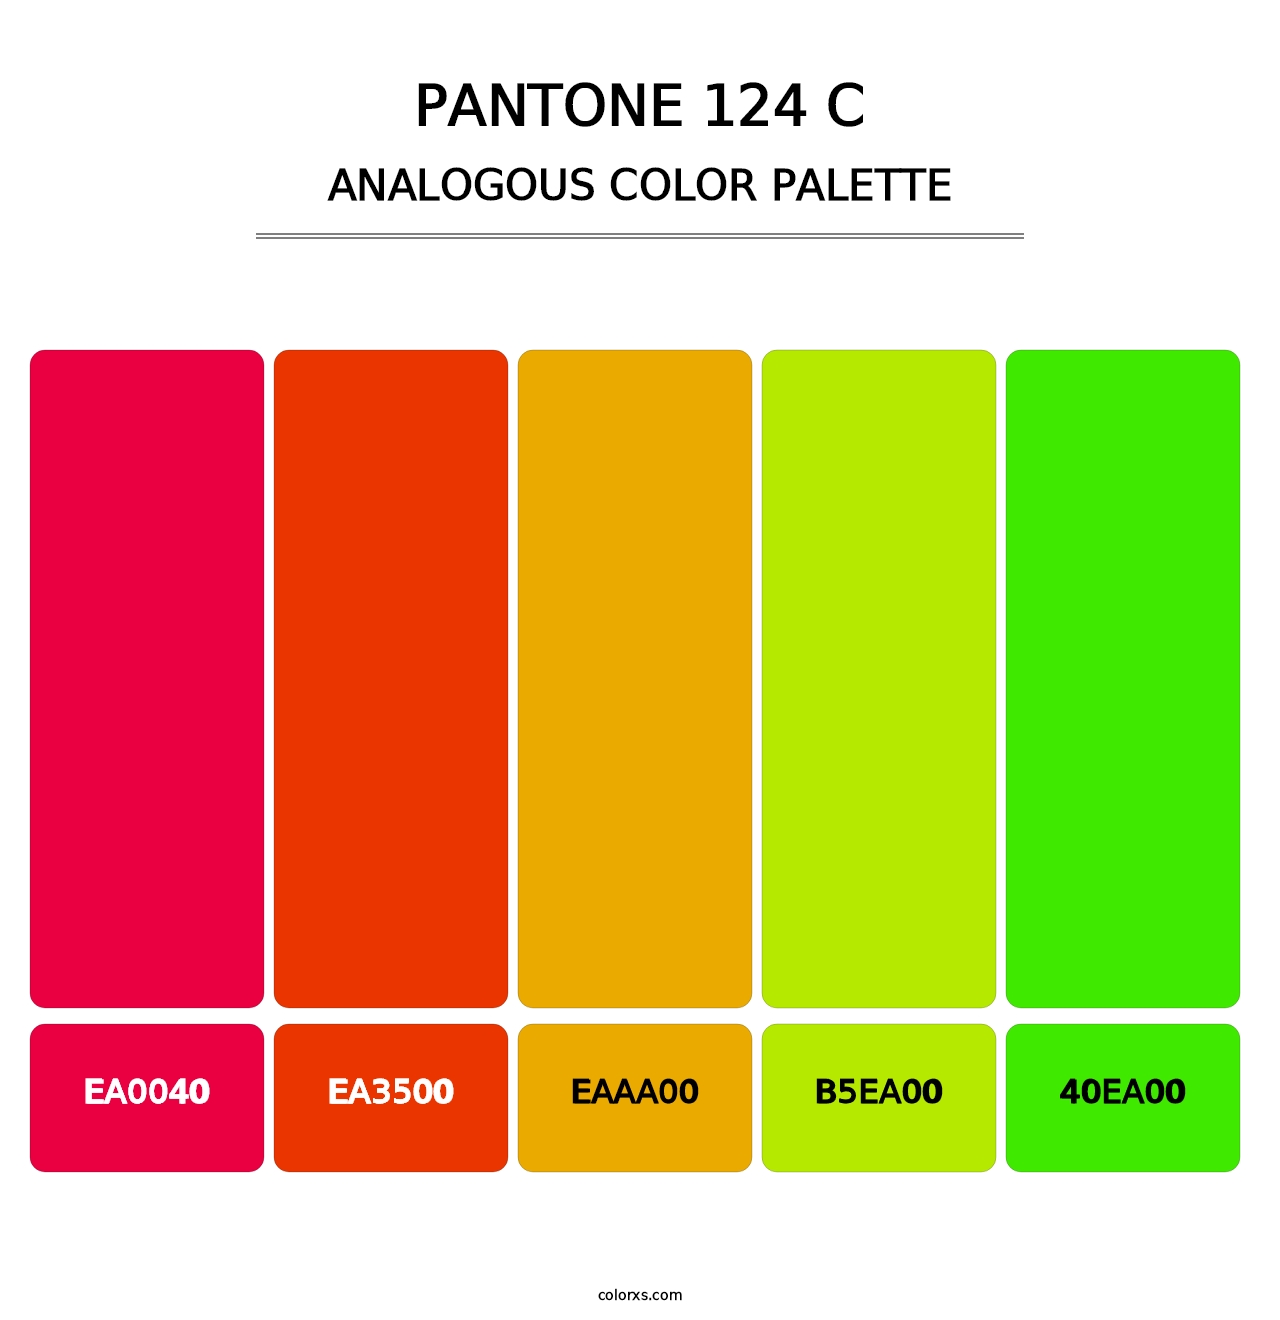 PANTONE 124 C - Analogous Color Palette